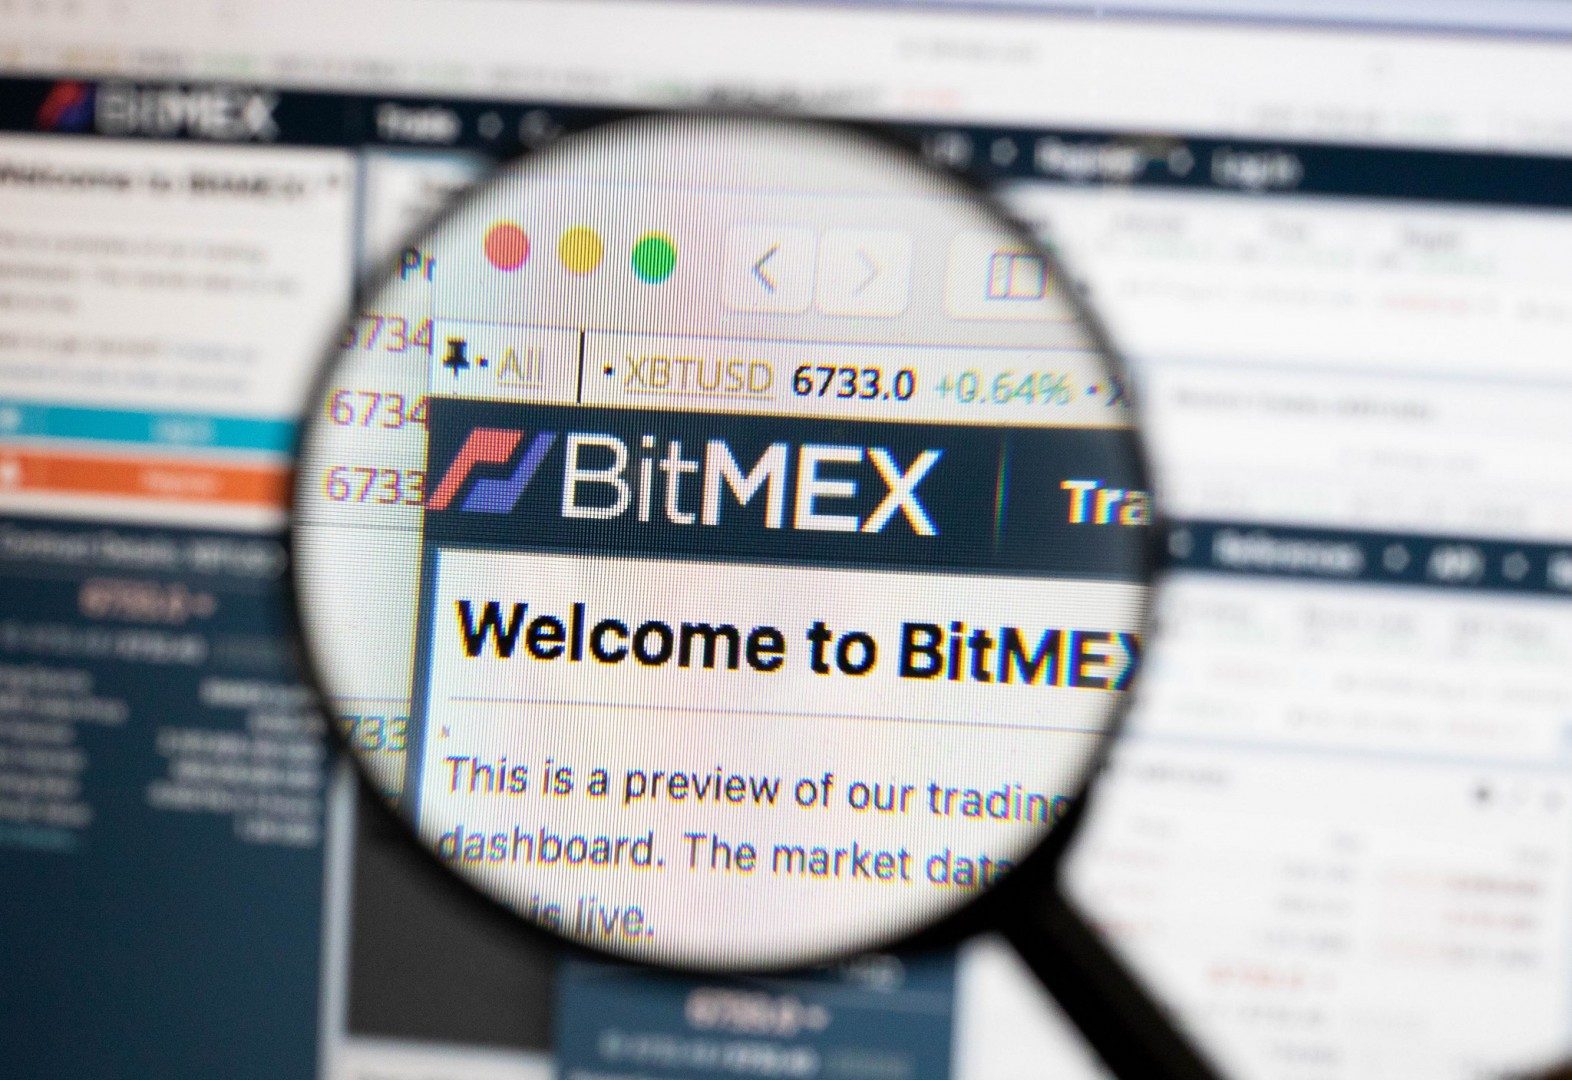 BitMEX bị buộc tội rửa tiền và thao túng thị trường